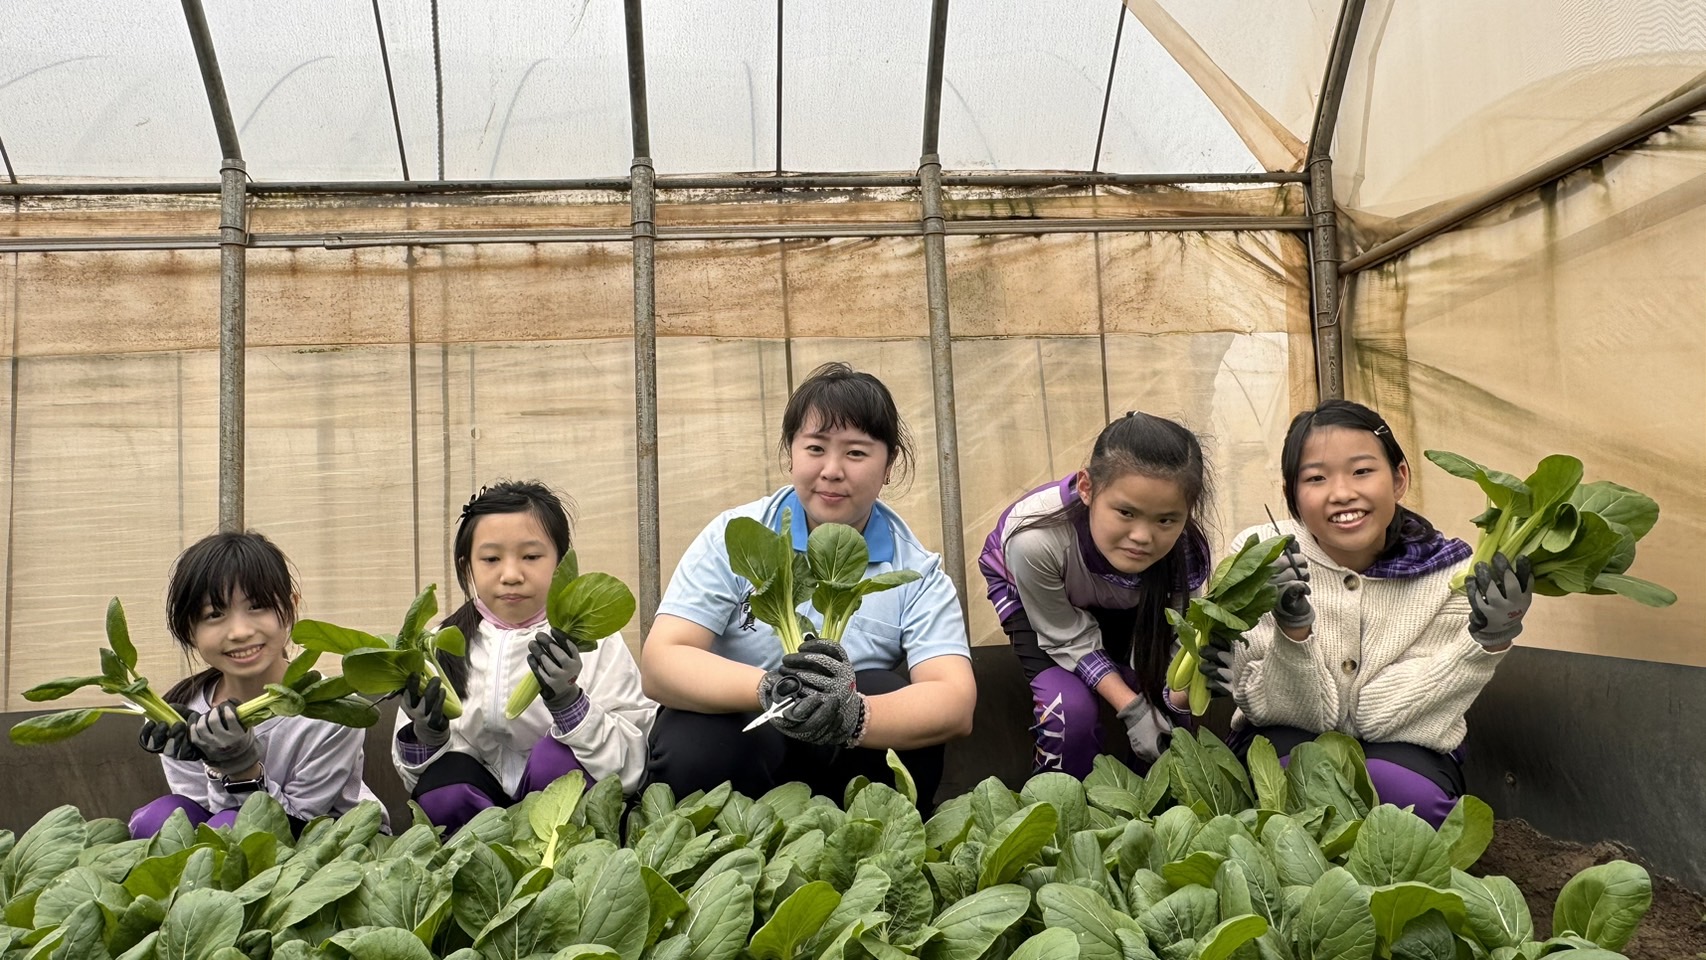 新北青農推食農教育 種有機蔬菜回饋社會